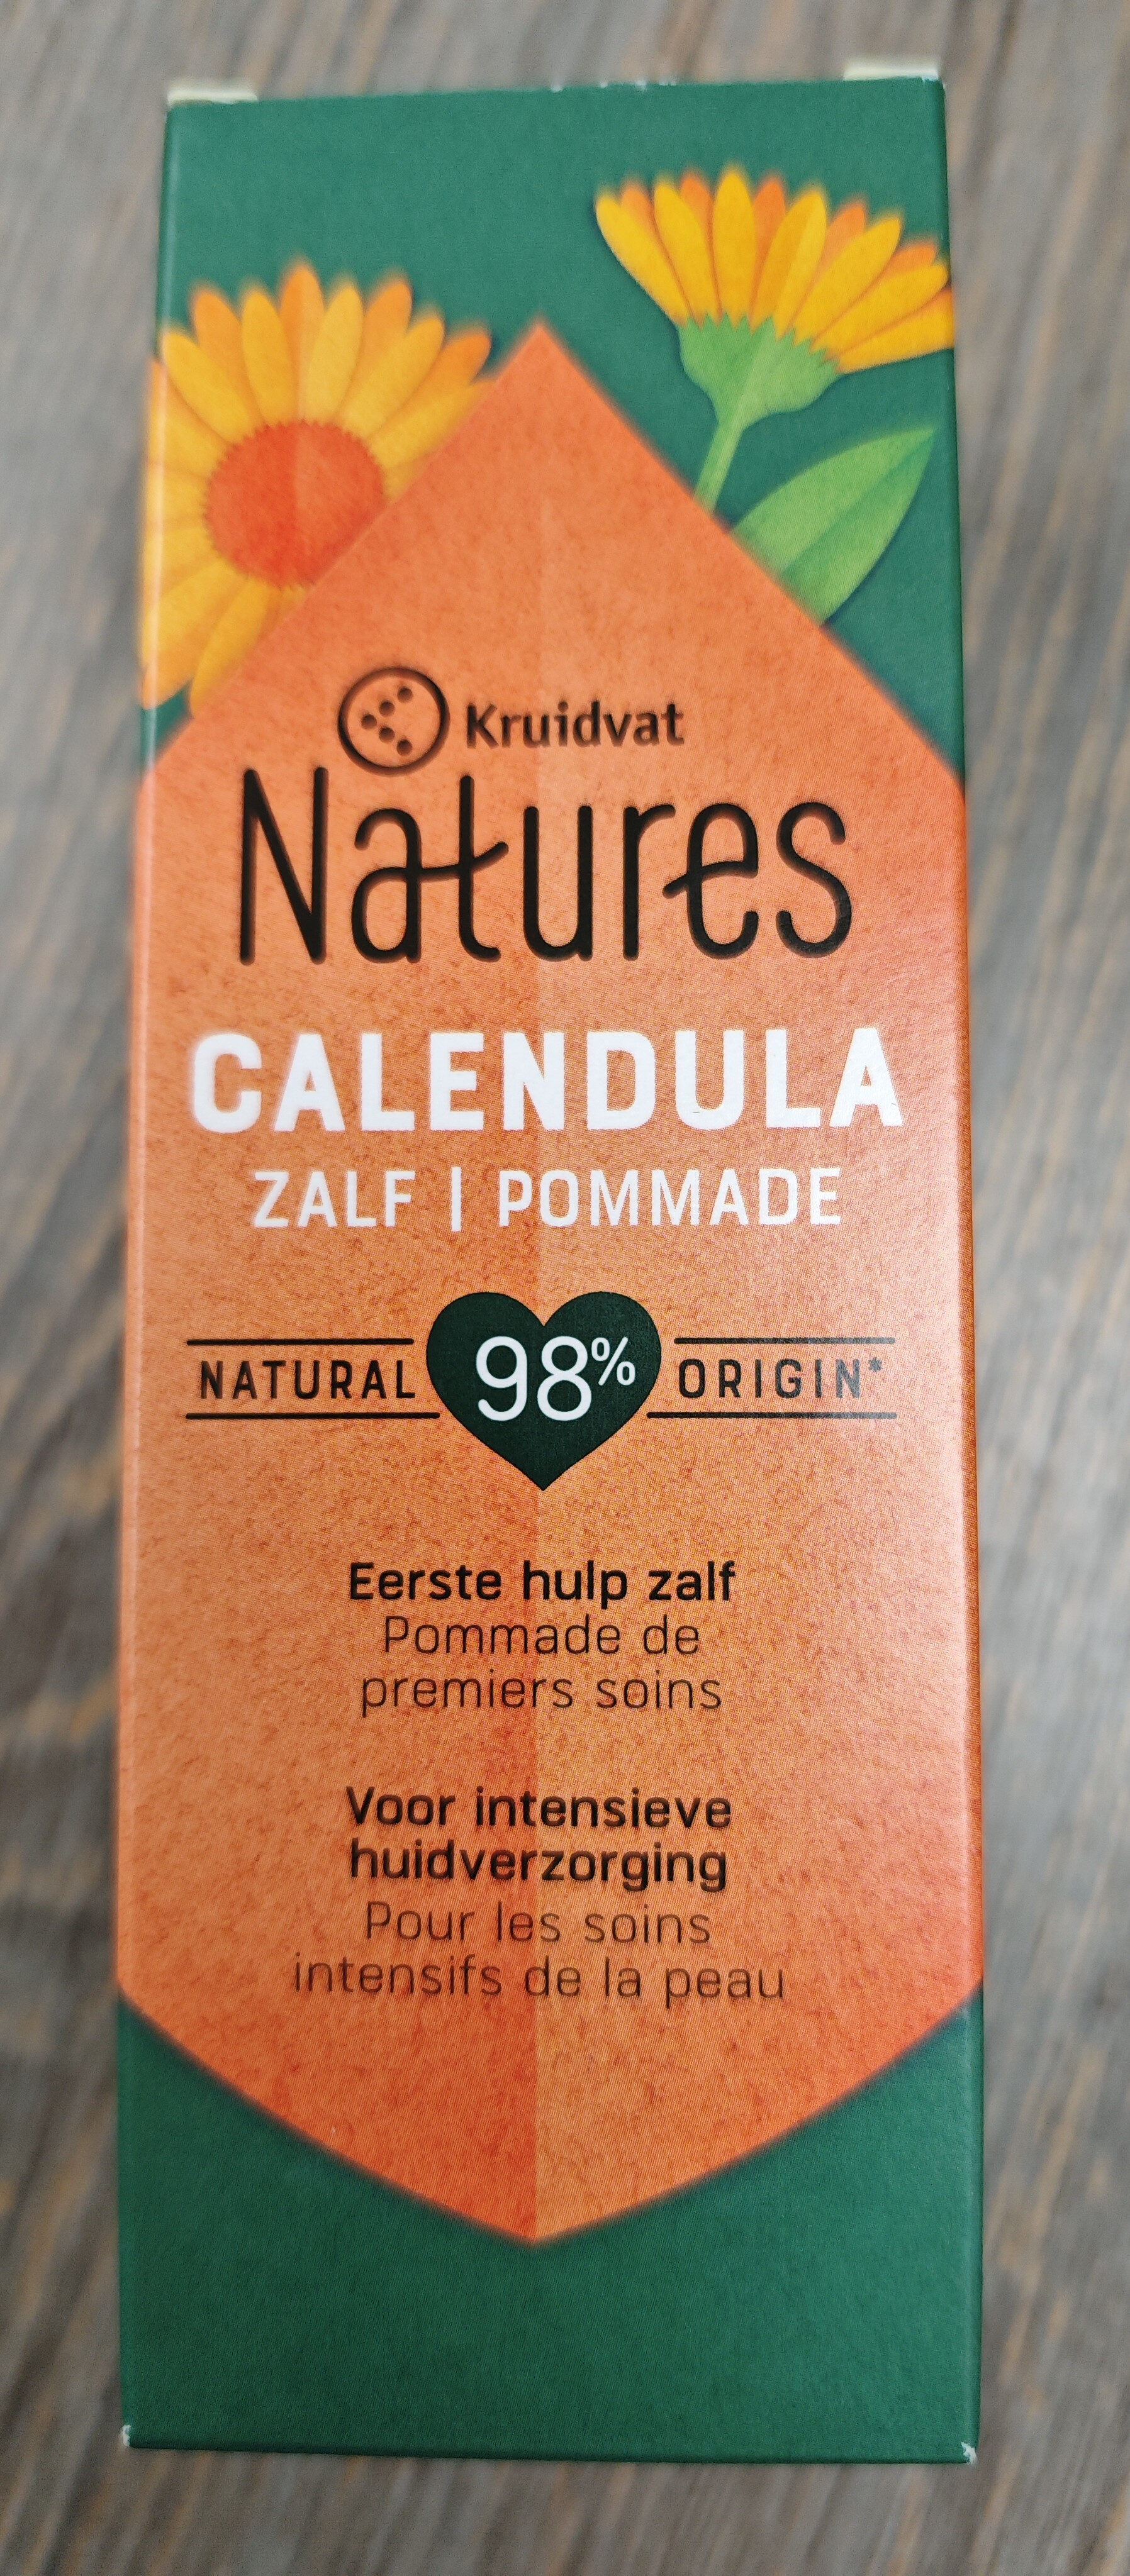 Kruidvat Natures Calendula - Product - fr